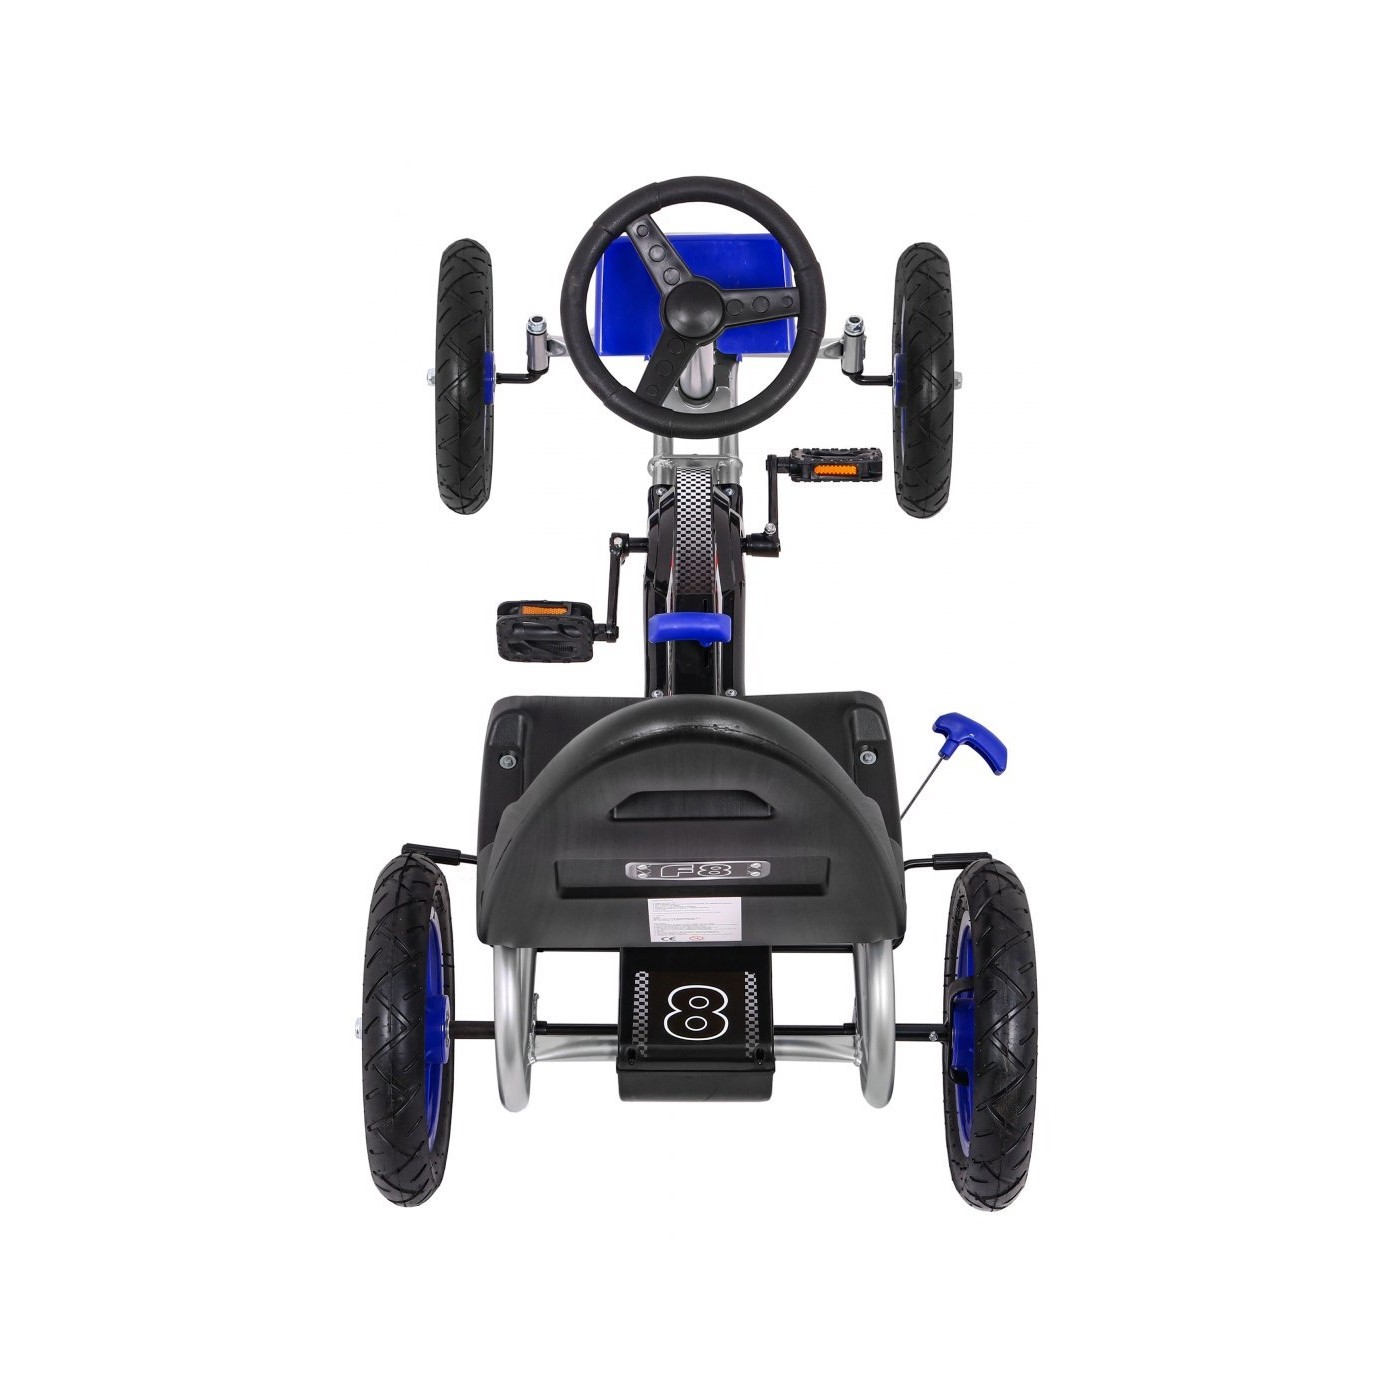 Pedal Gokart Full Ahead AIR Blue